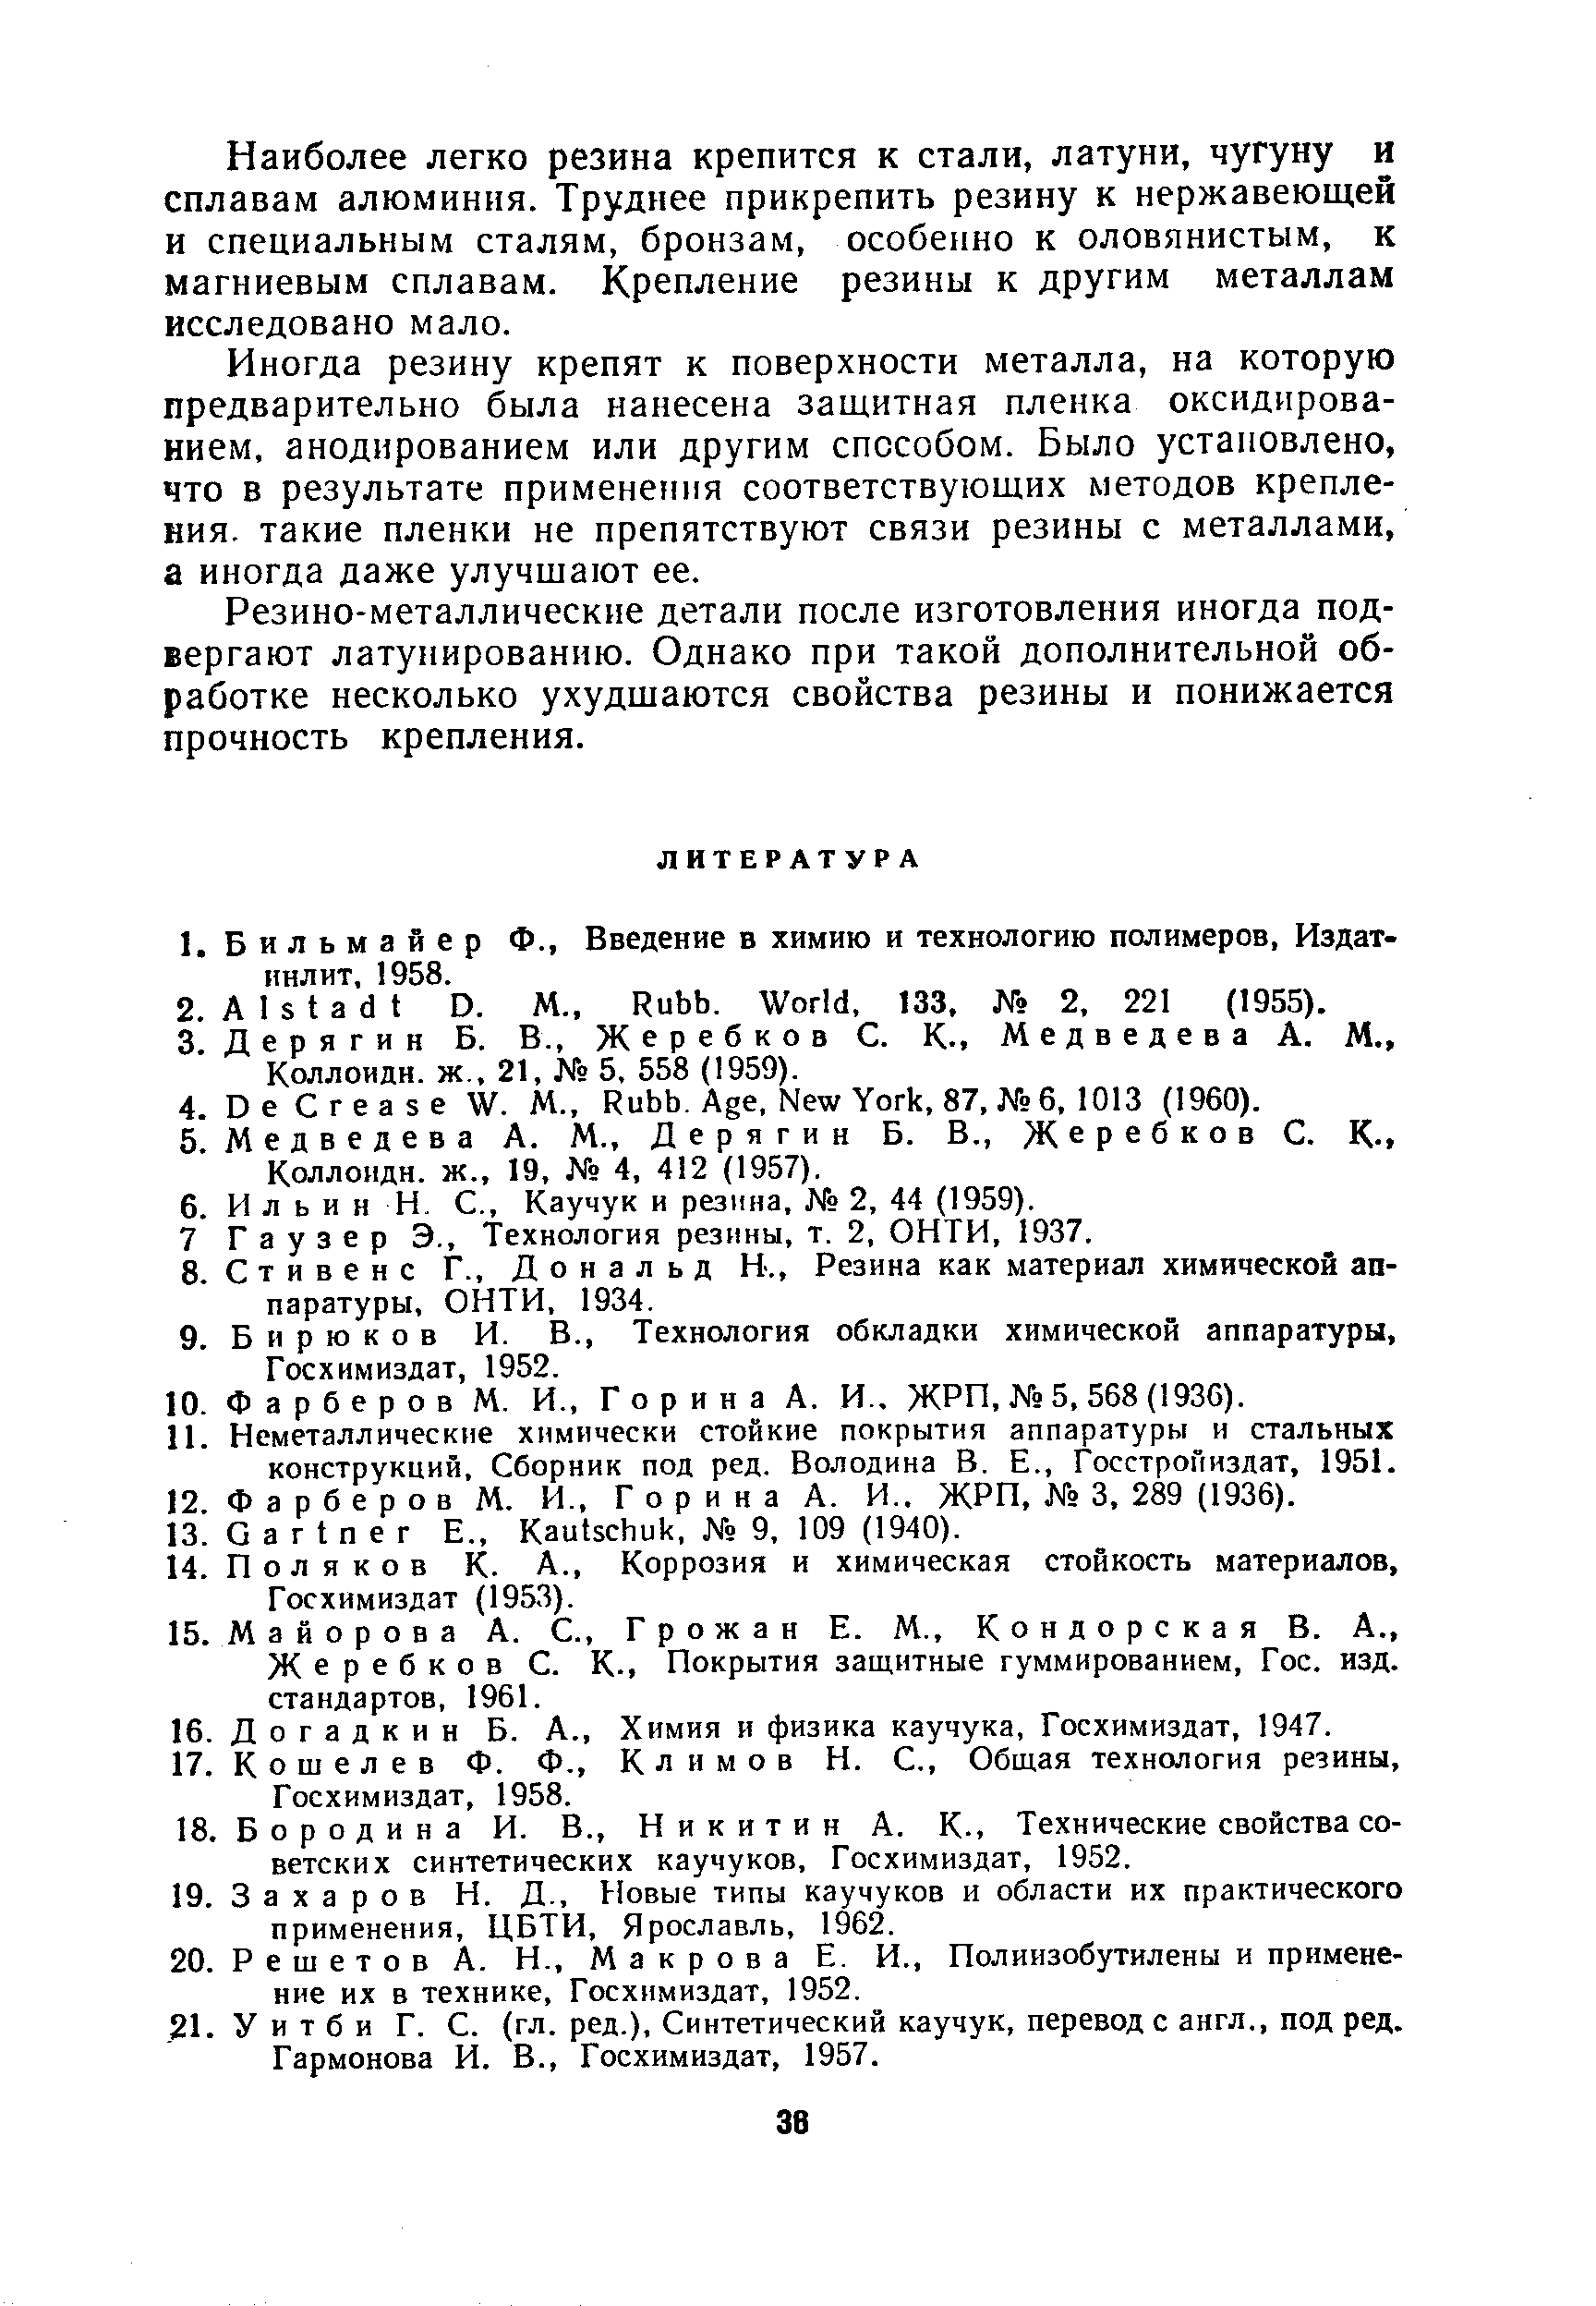 Жеребков С. К., Покрытия защитные гуммированием. Гос. изд. стандартов, 1961.